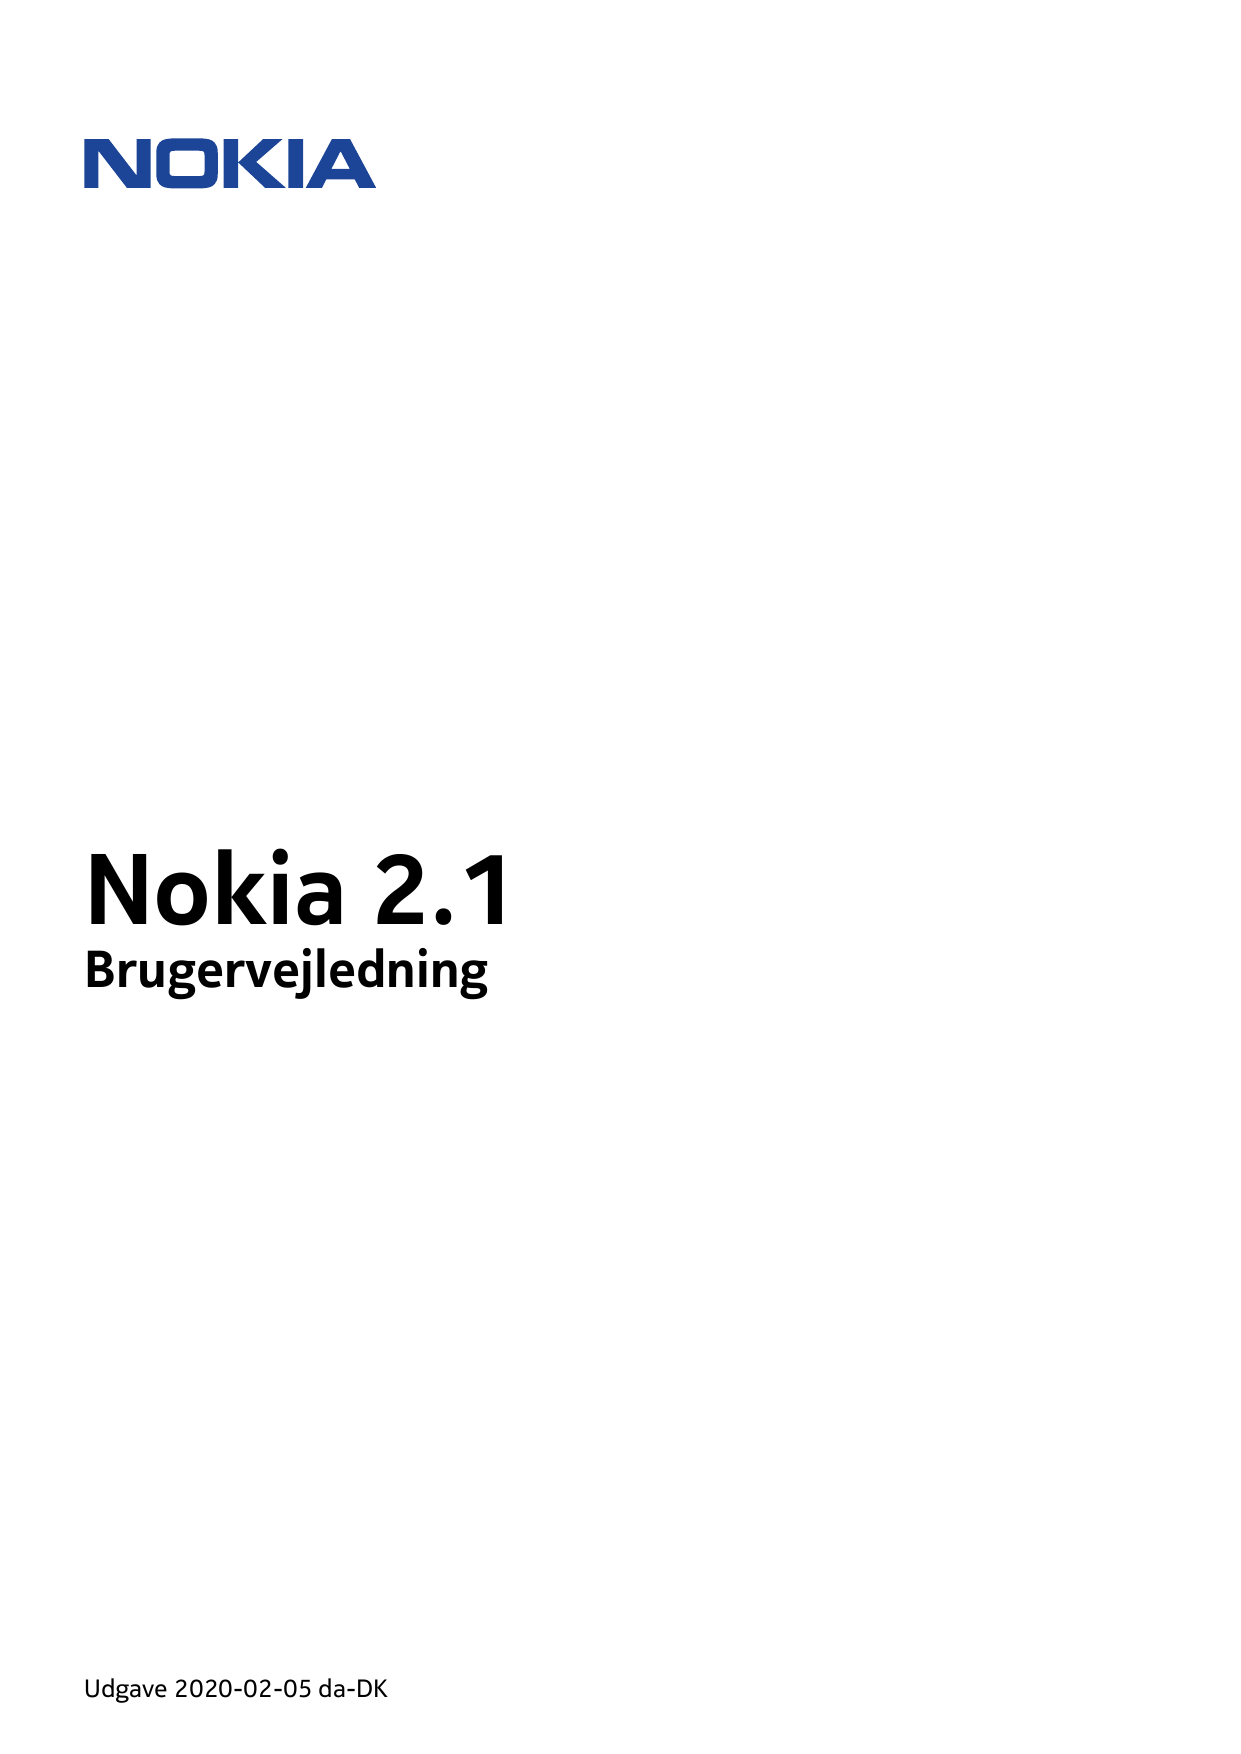 Nokia 2.1BrugervejledningUdgave 2020-02-05 da-DK